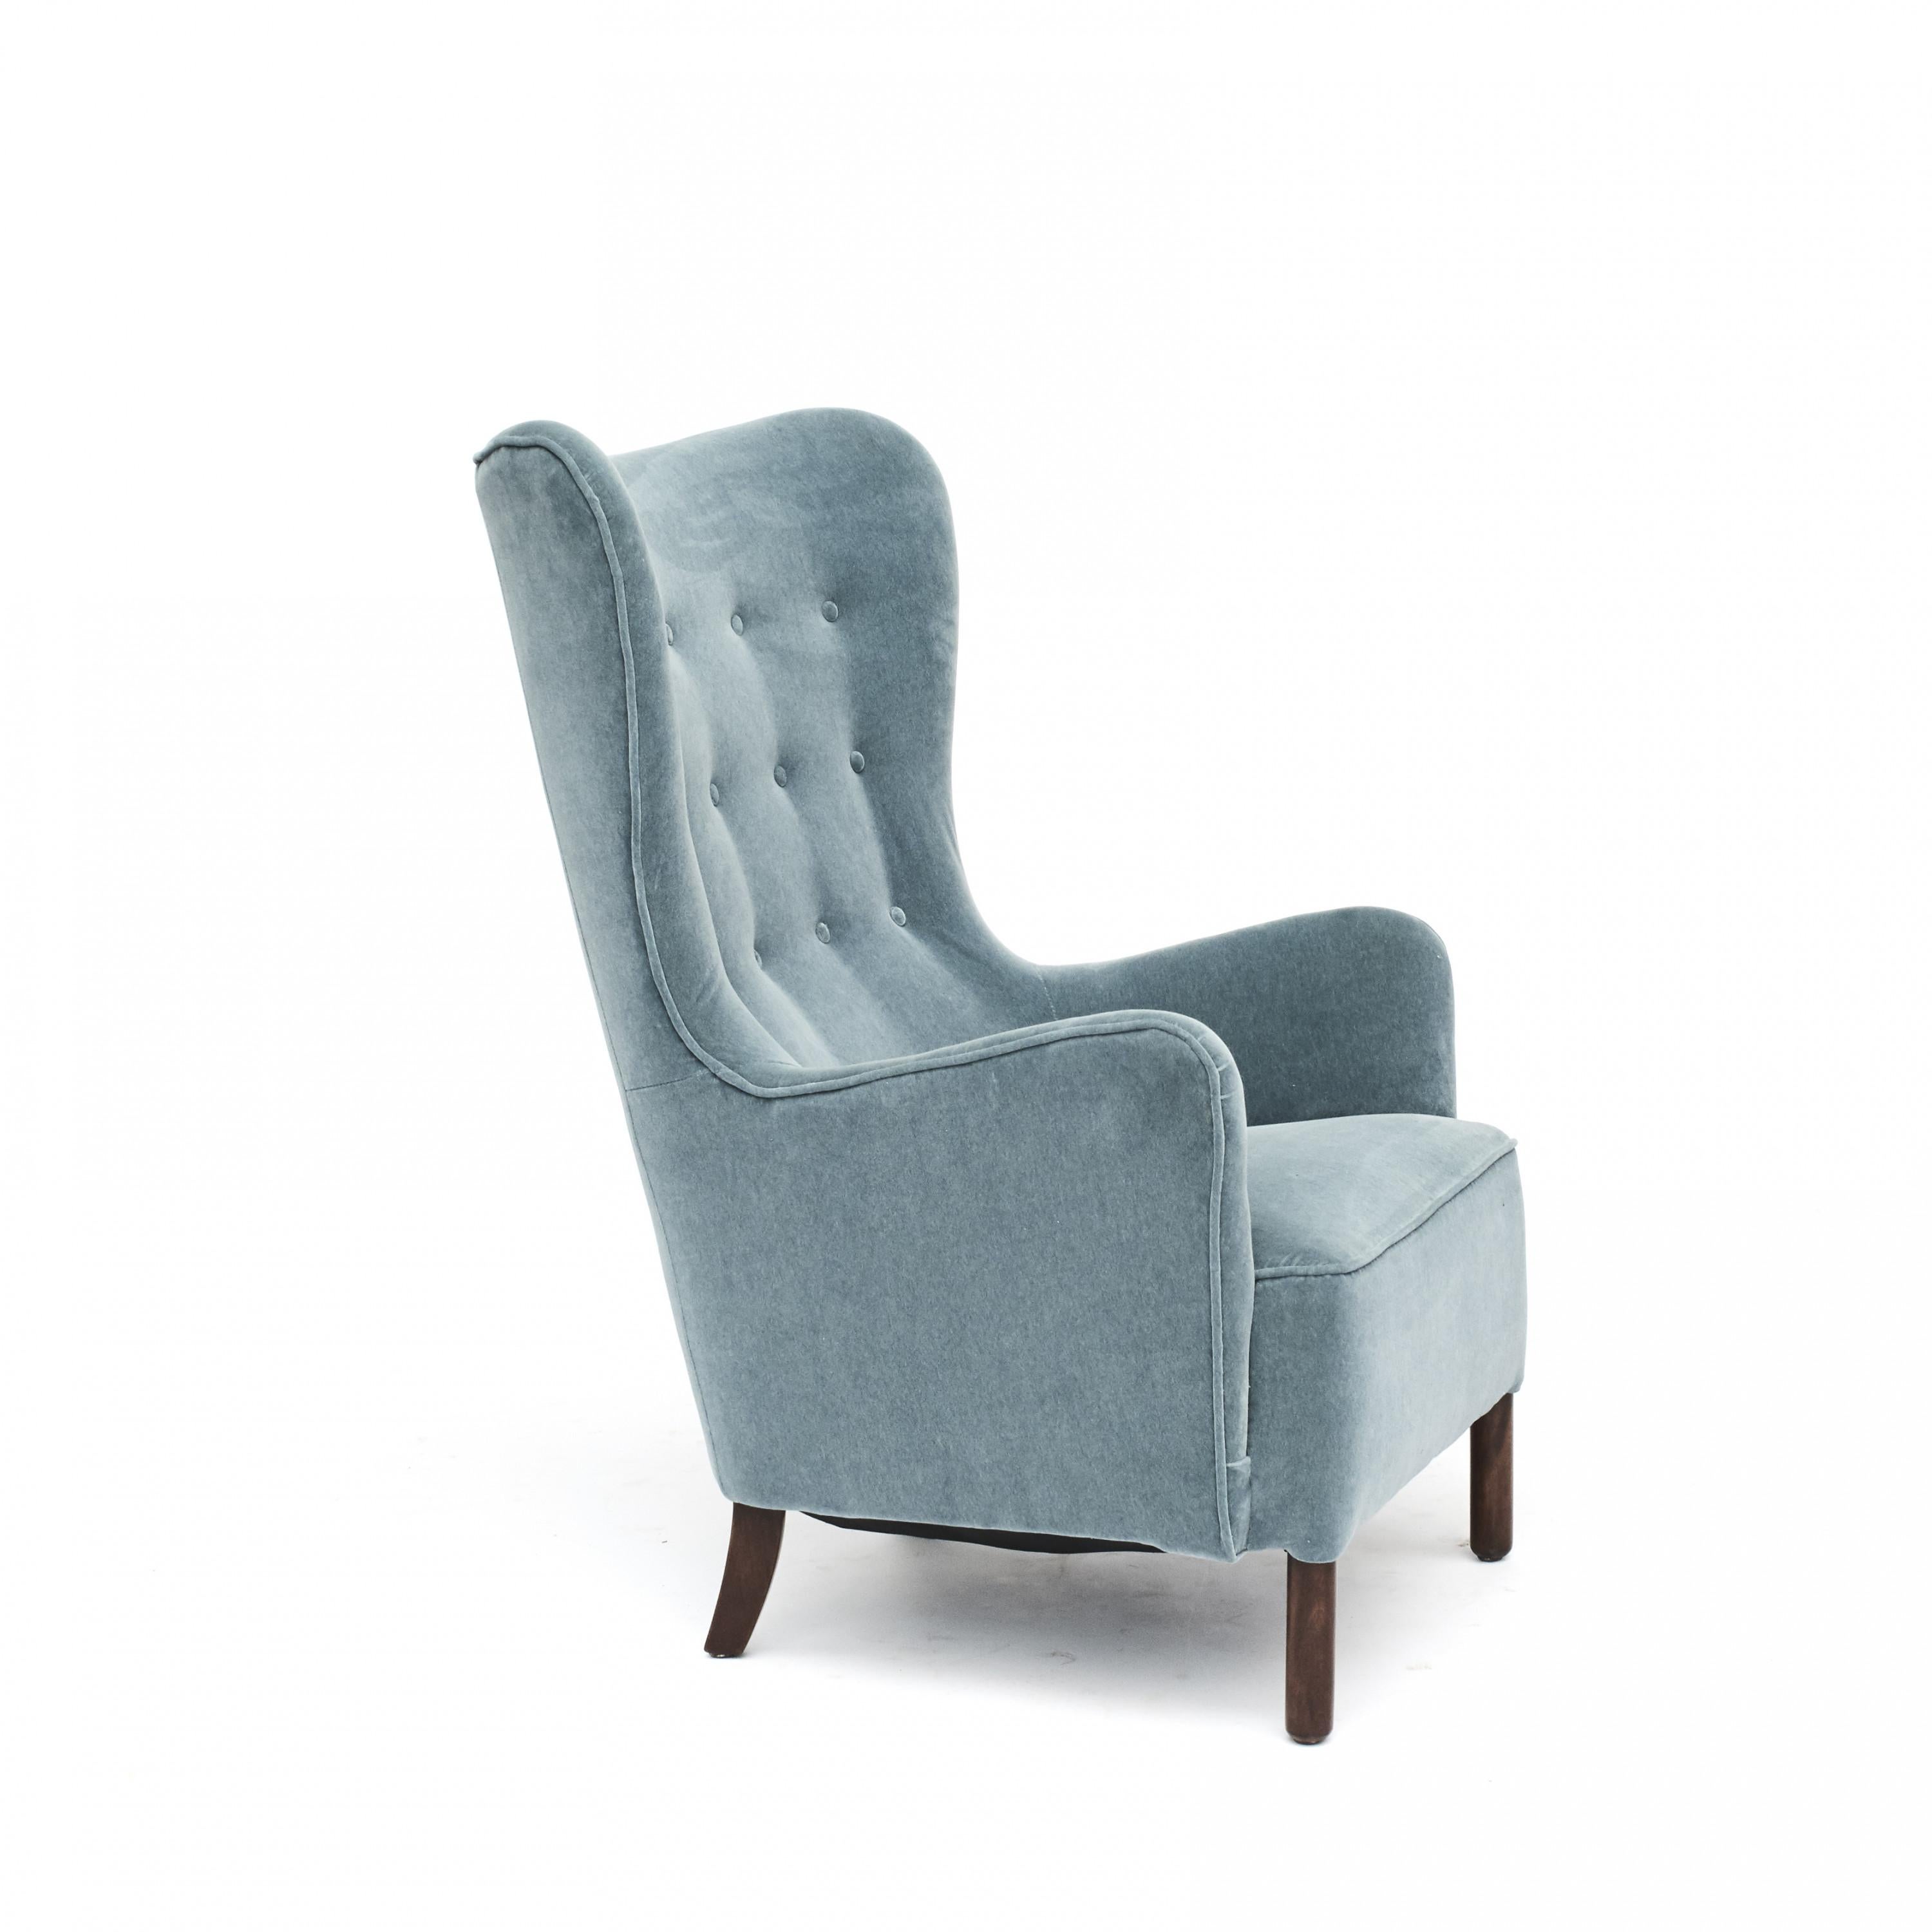 Fauteuil danois, 1930-1940.
Rembourrage professionnel dans un magnifique velours bleu pétrole de Churchill. Pieds en hêtre poli foncé.
La chaise est très confortable pour s'asseoir.